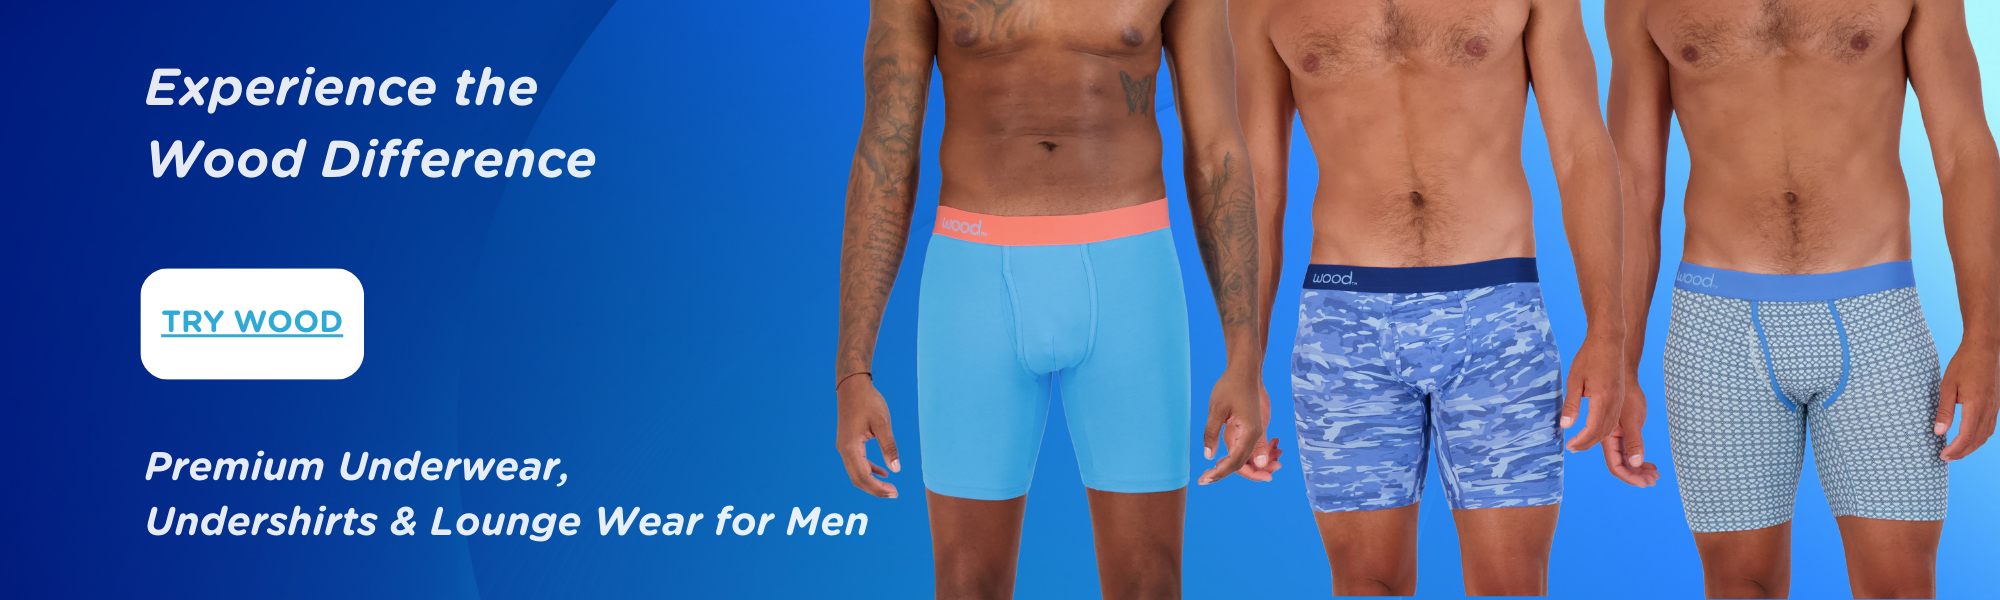 Men's Underwear & Loungewear